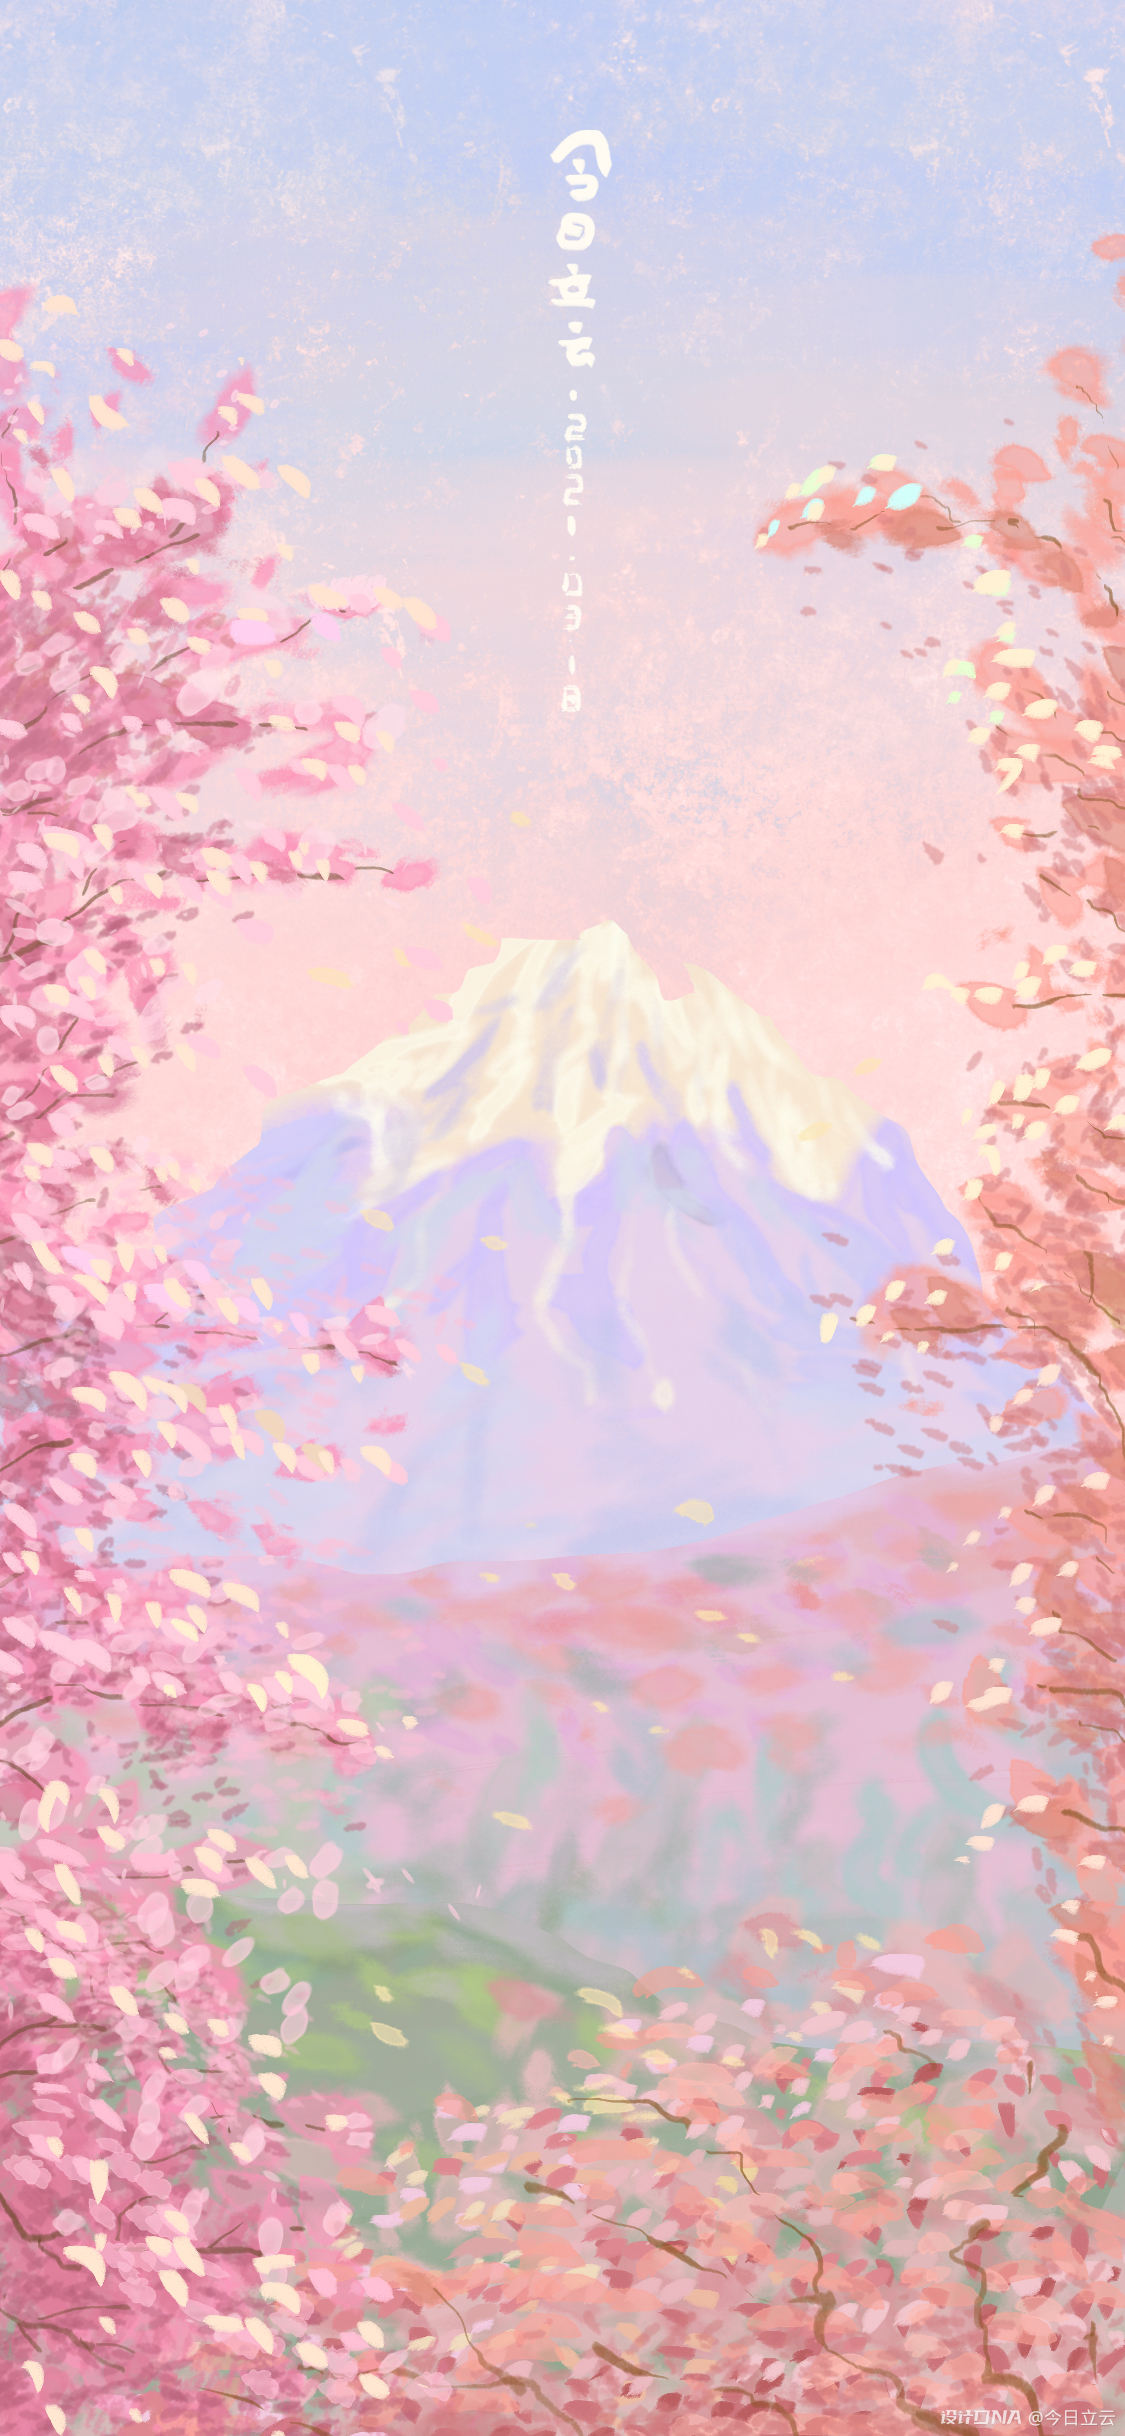 手机壁纸|樱花富士山 图1